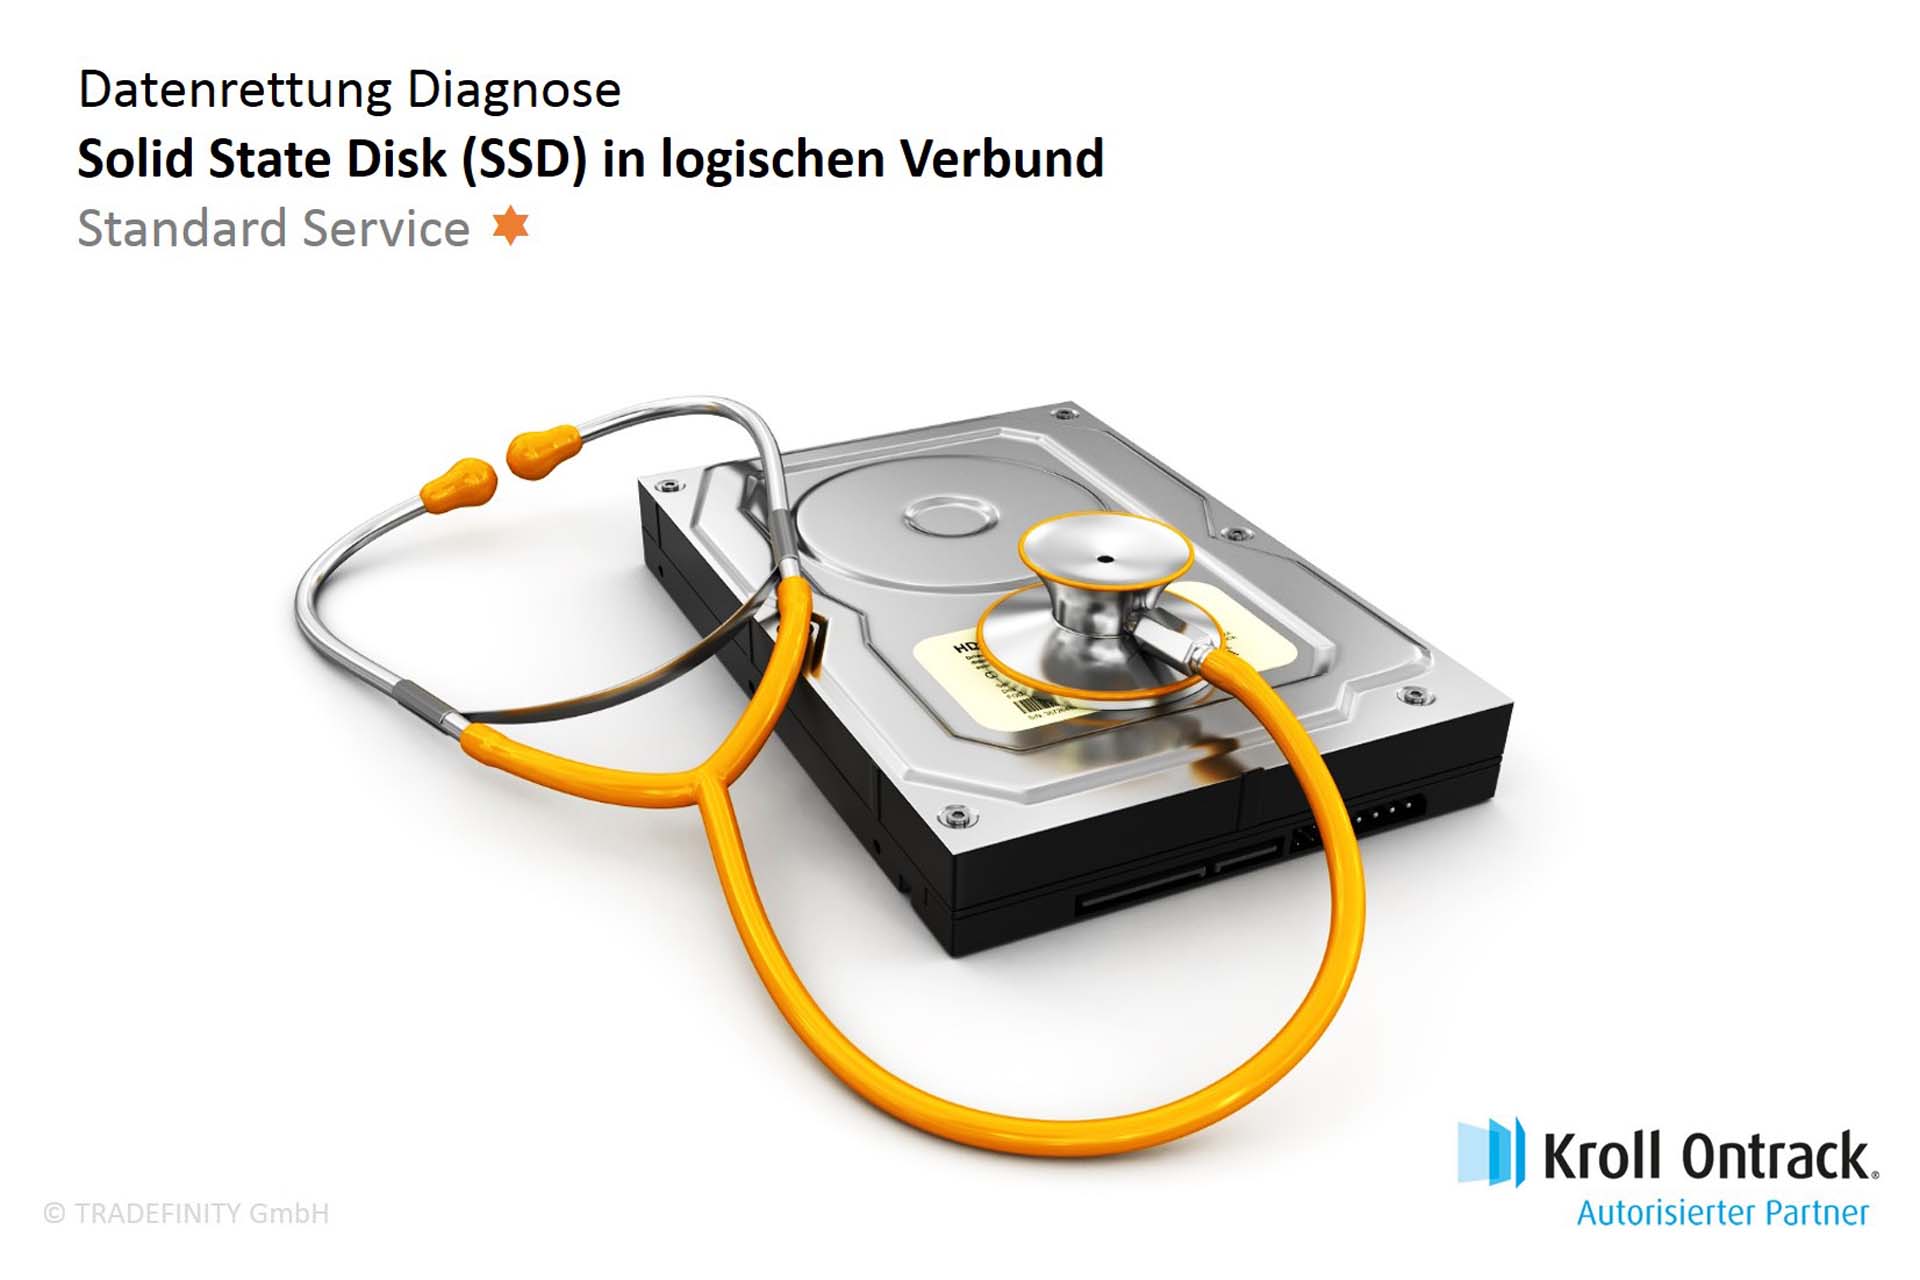 Datenrettung Diagnose (Standard Service) von SSD (Verbund)